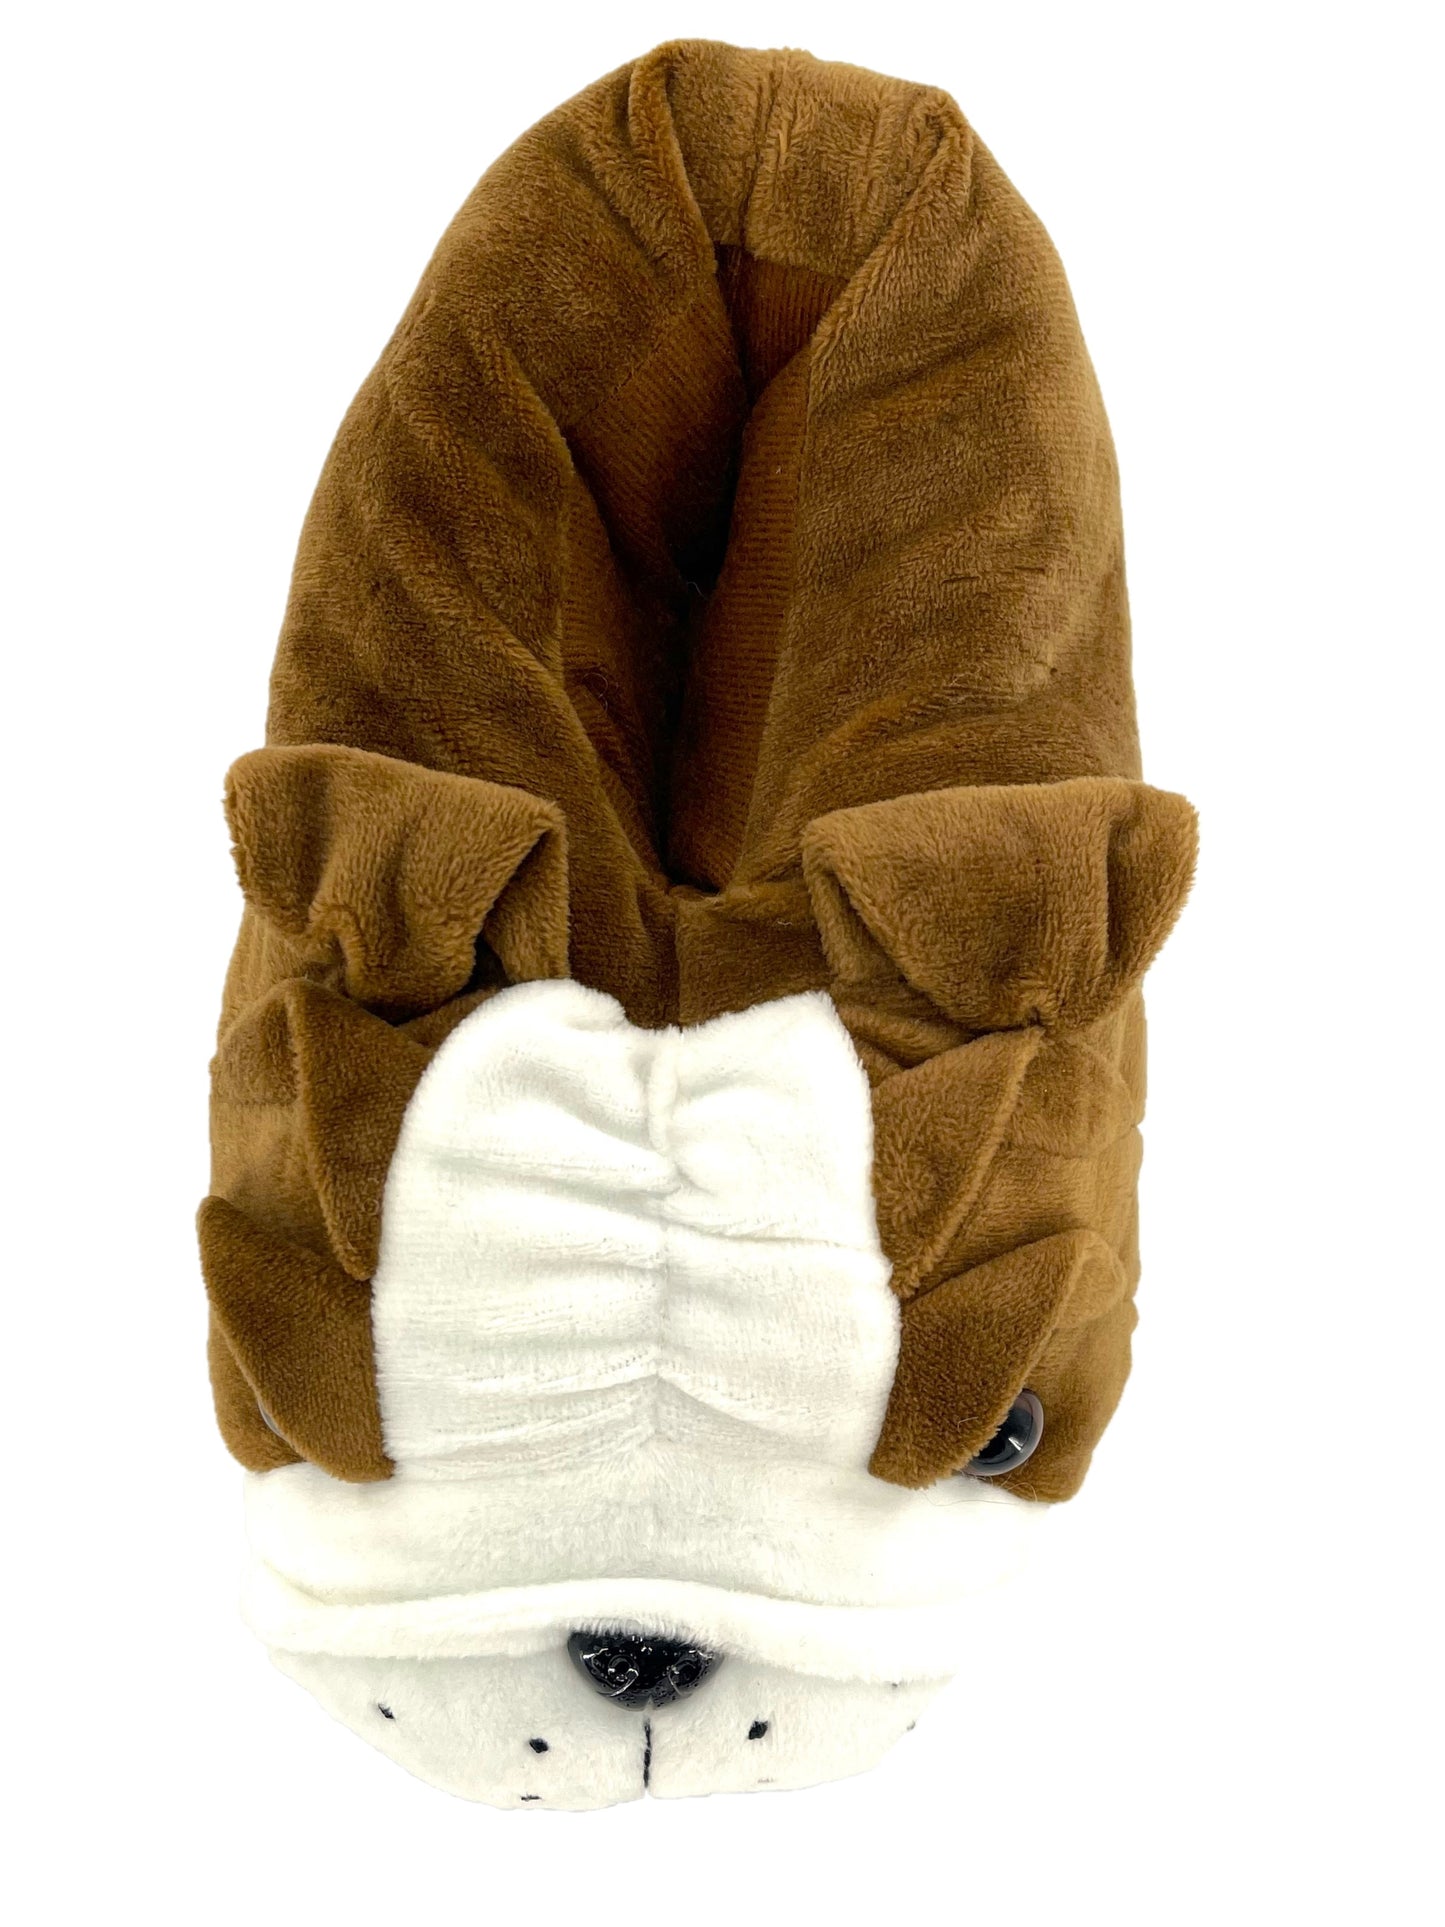 Men's Bulldog Slippers Novelty 3D Brown and White Plush